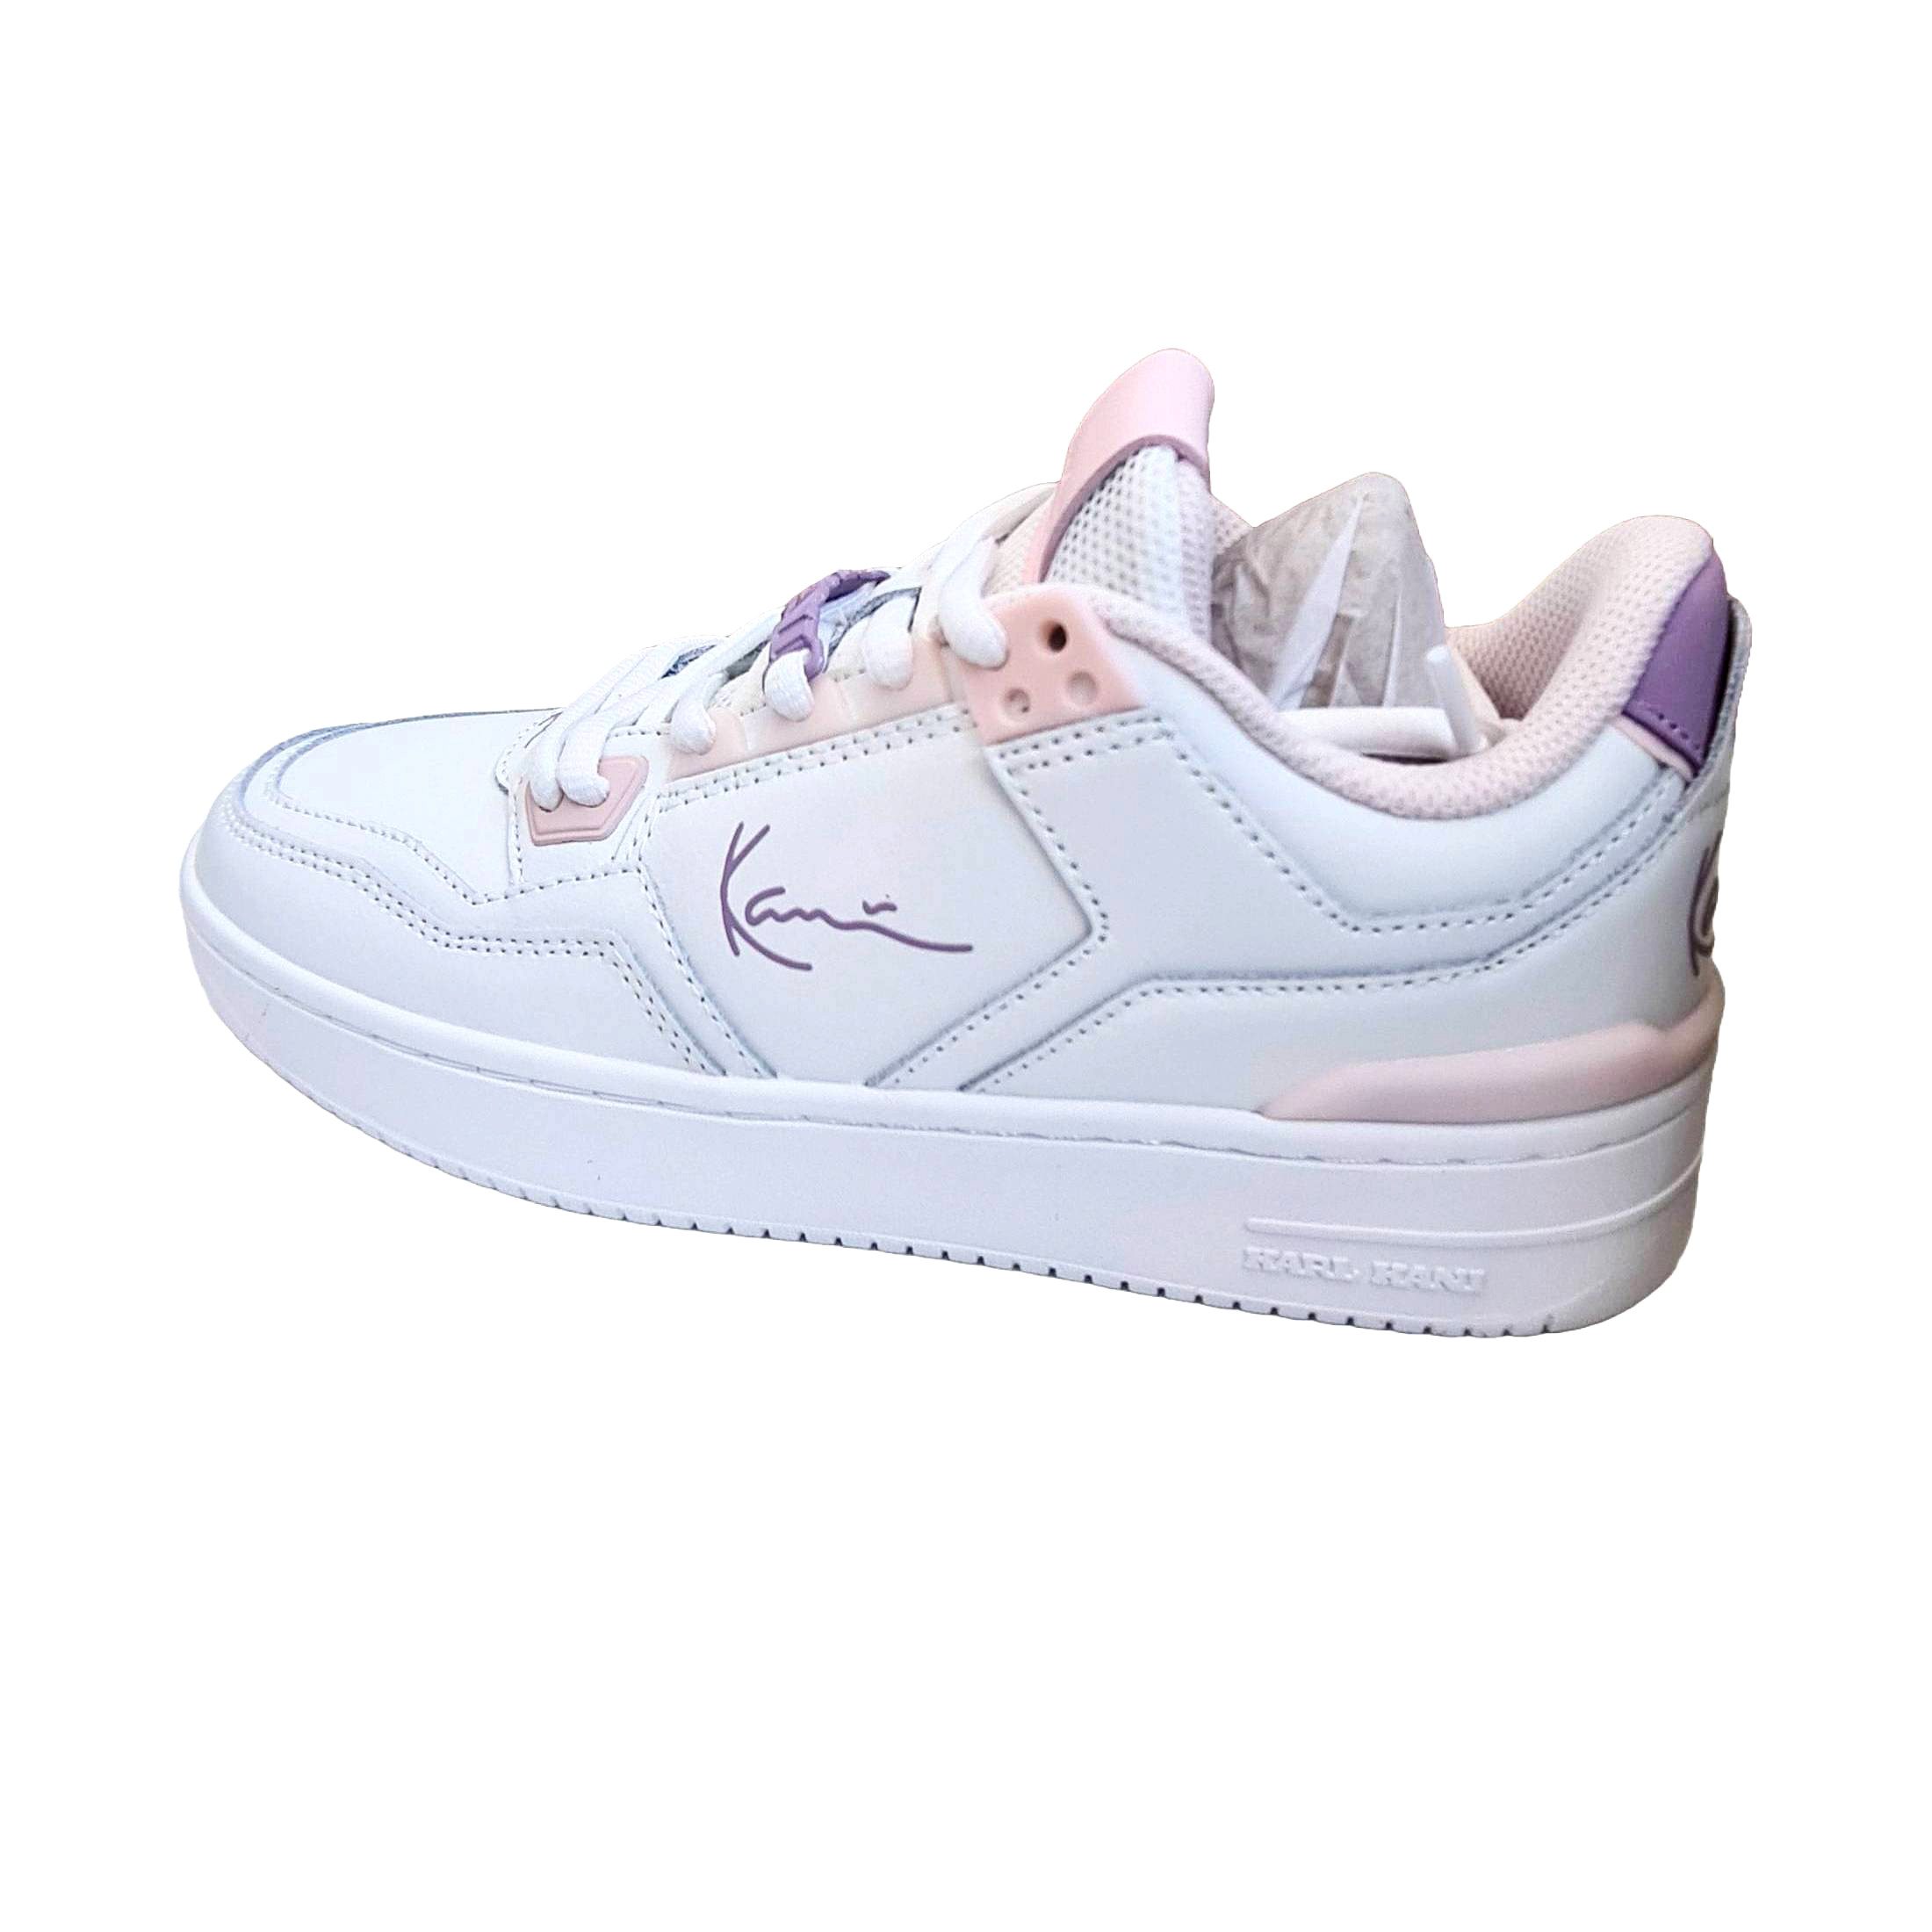 Karl Kani Karl Kani 89 LXRY Schuhe Damen Кросівки White Pink Lilac Кросівки